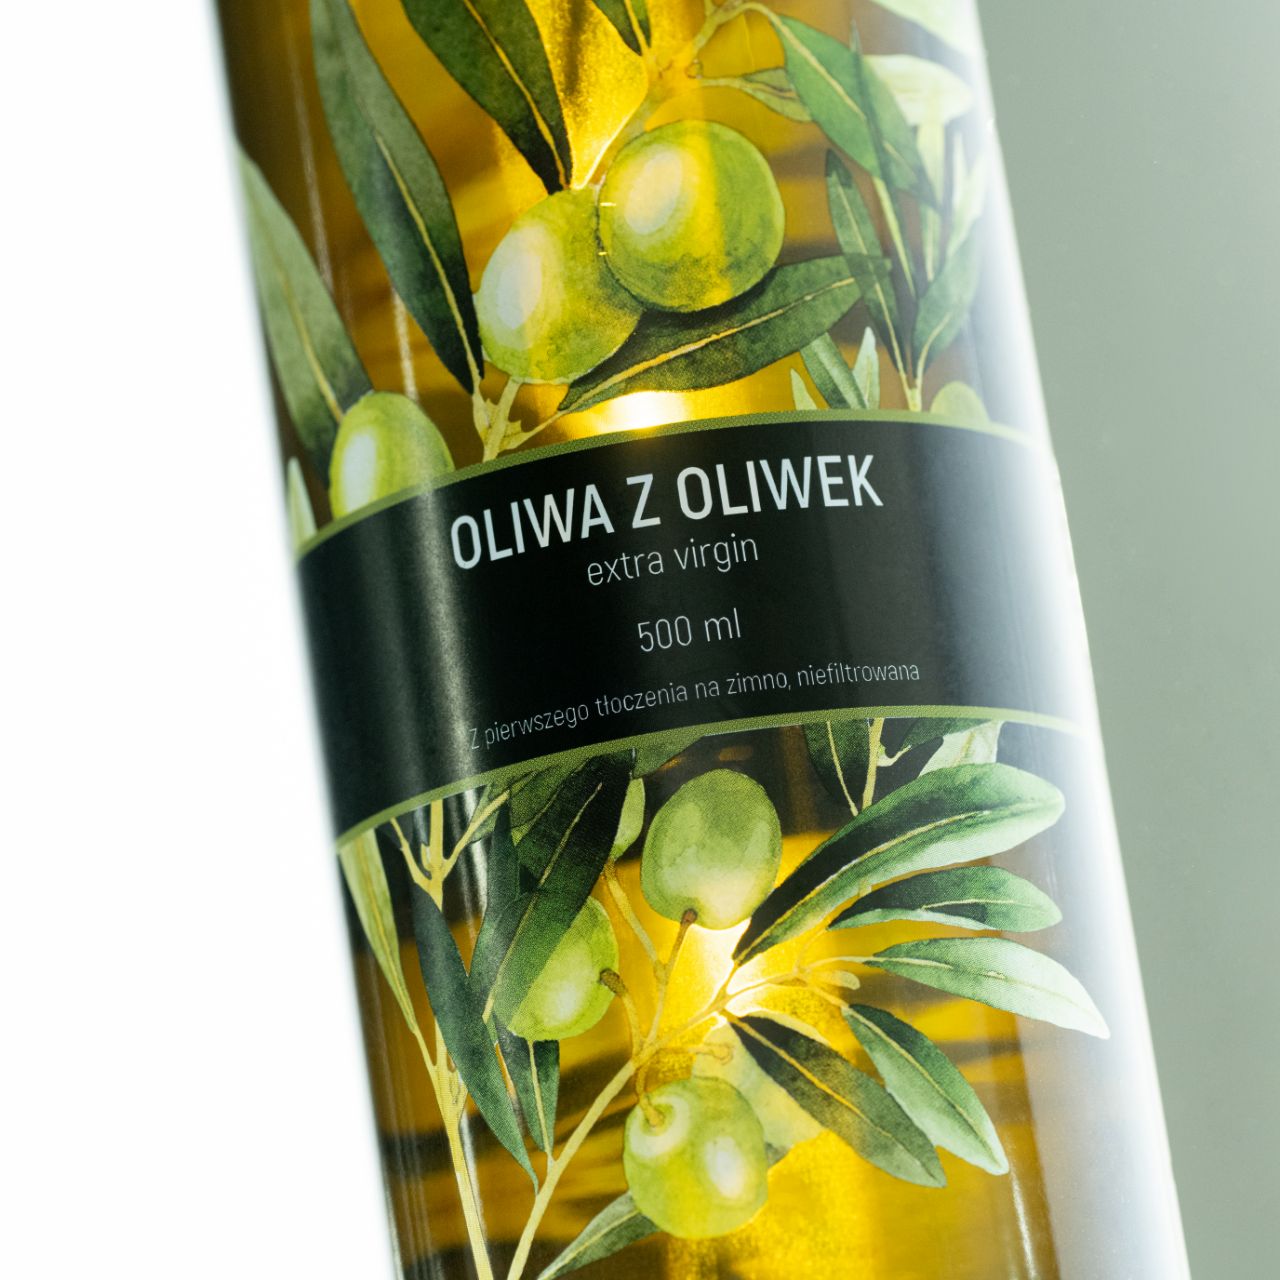 Etykieta spożywcza na oliwie z oliwek